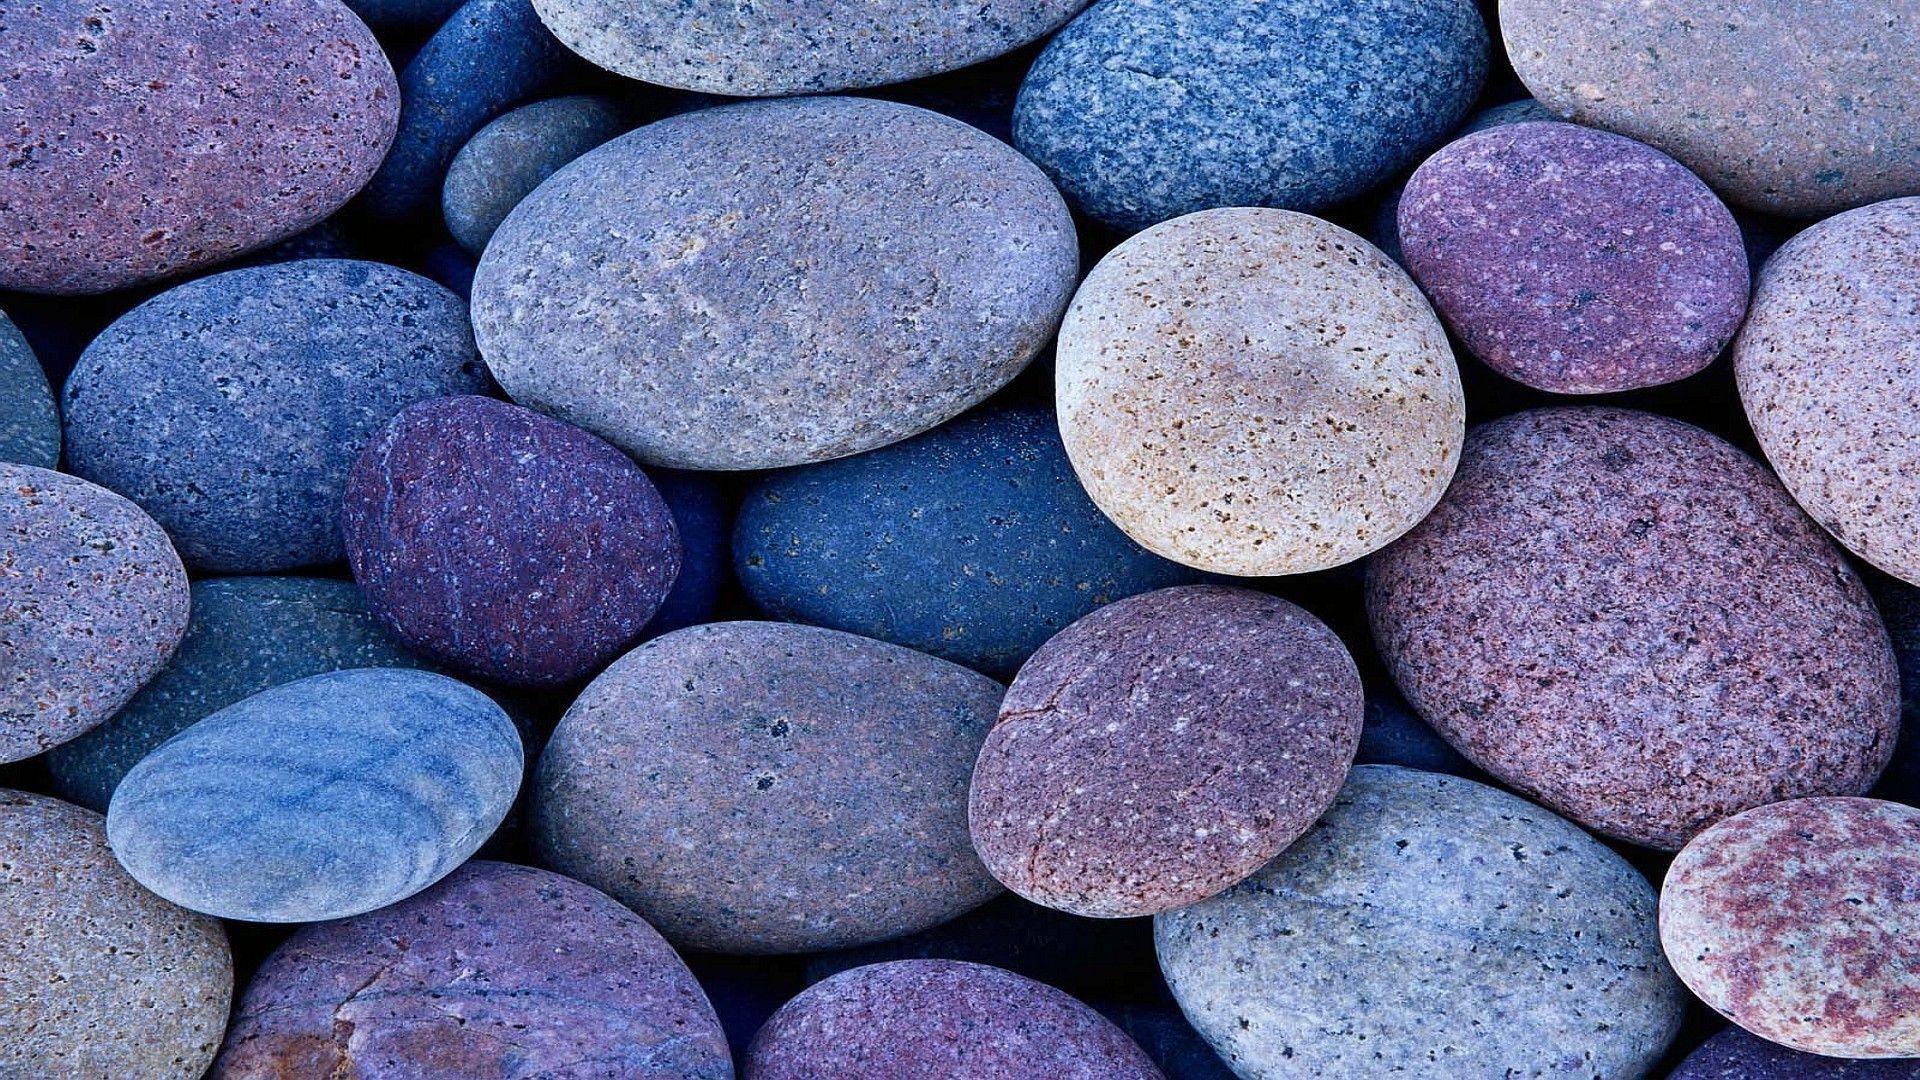 Pebbles and Rocks Wallpaper. Pebbles. Decorative pebbles